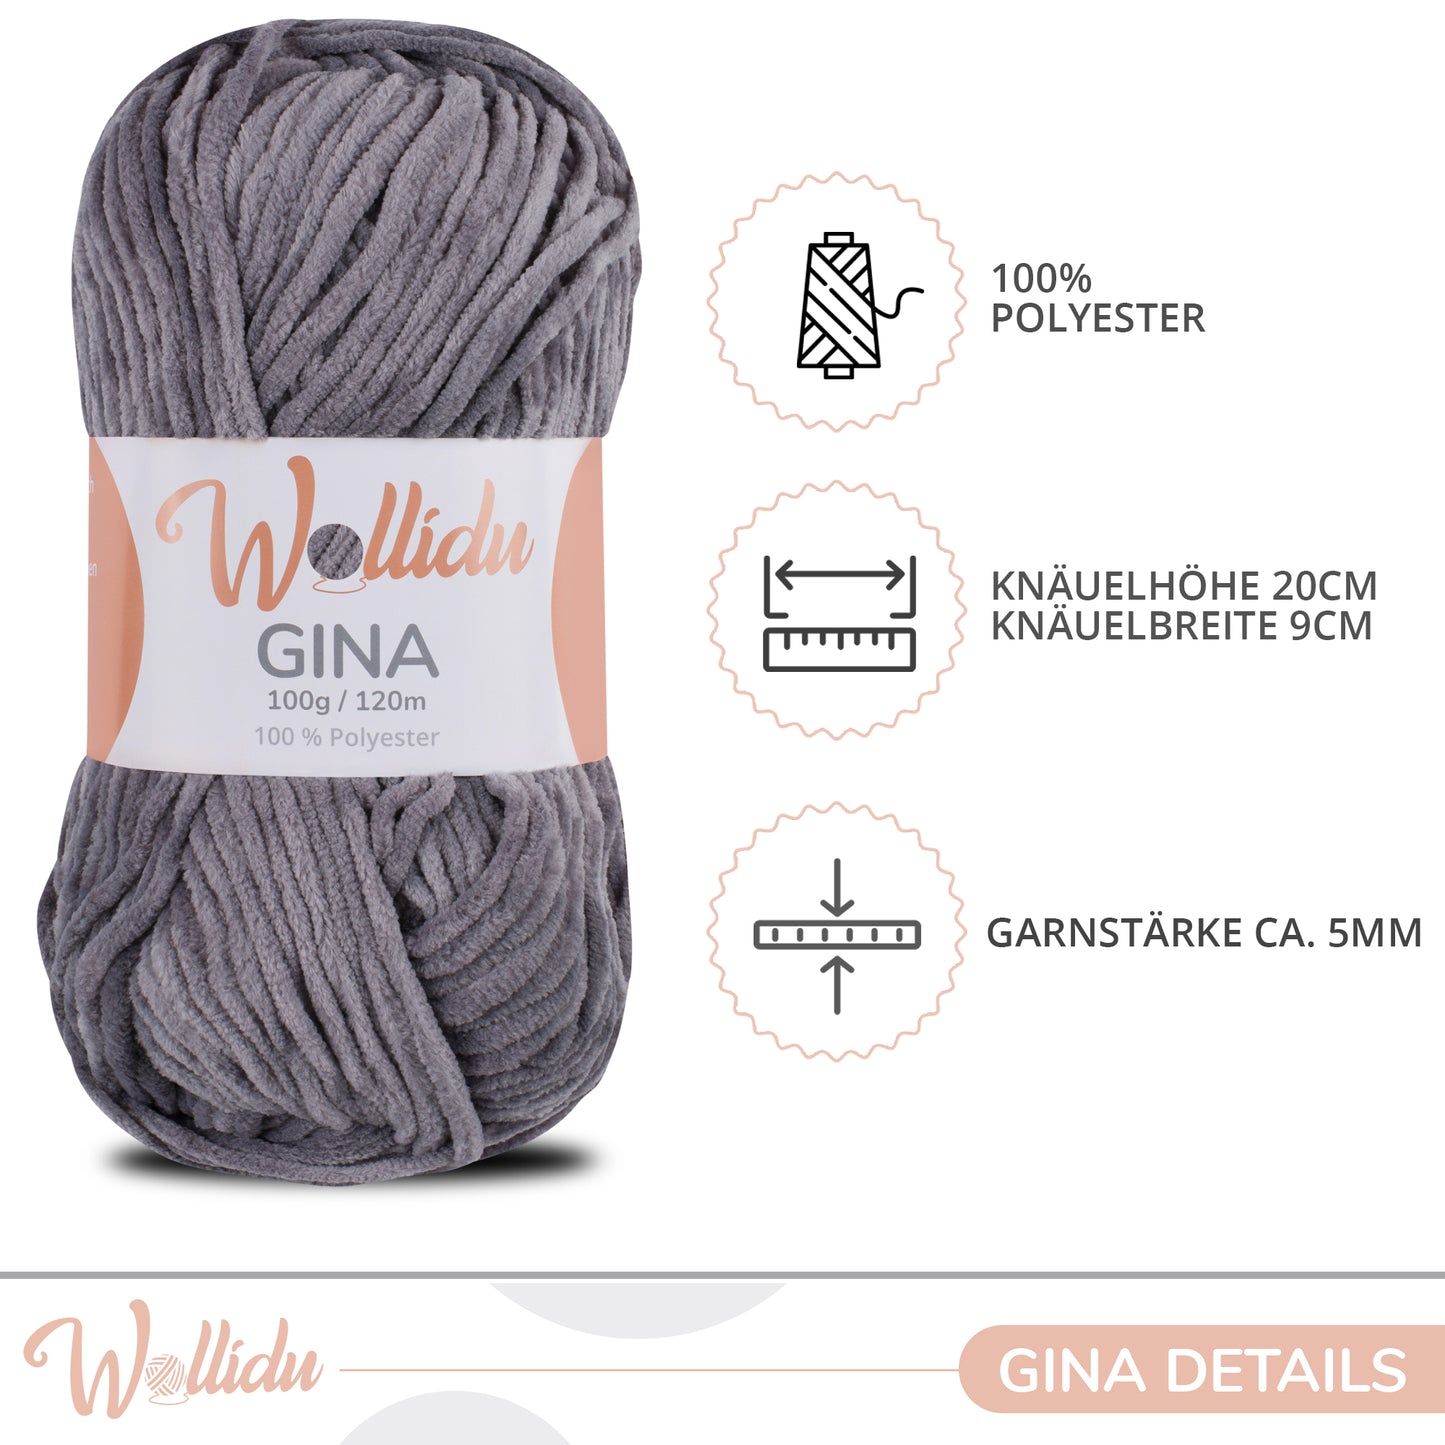 Wollidu Gina 100% Polyester 5 x 100g/120m - Grau